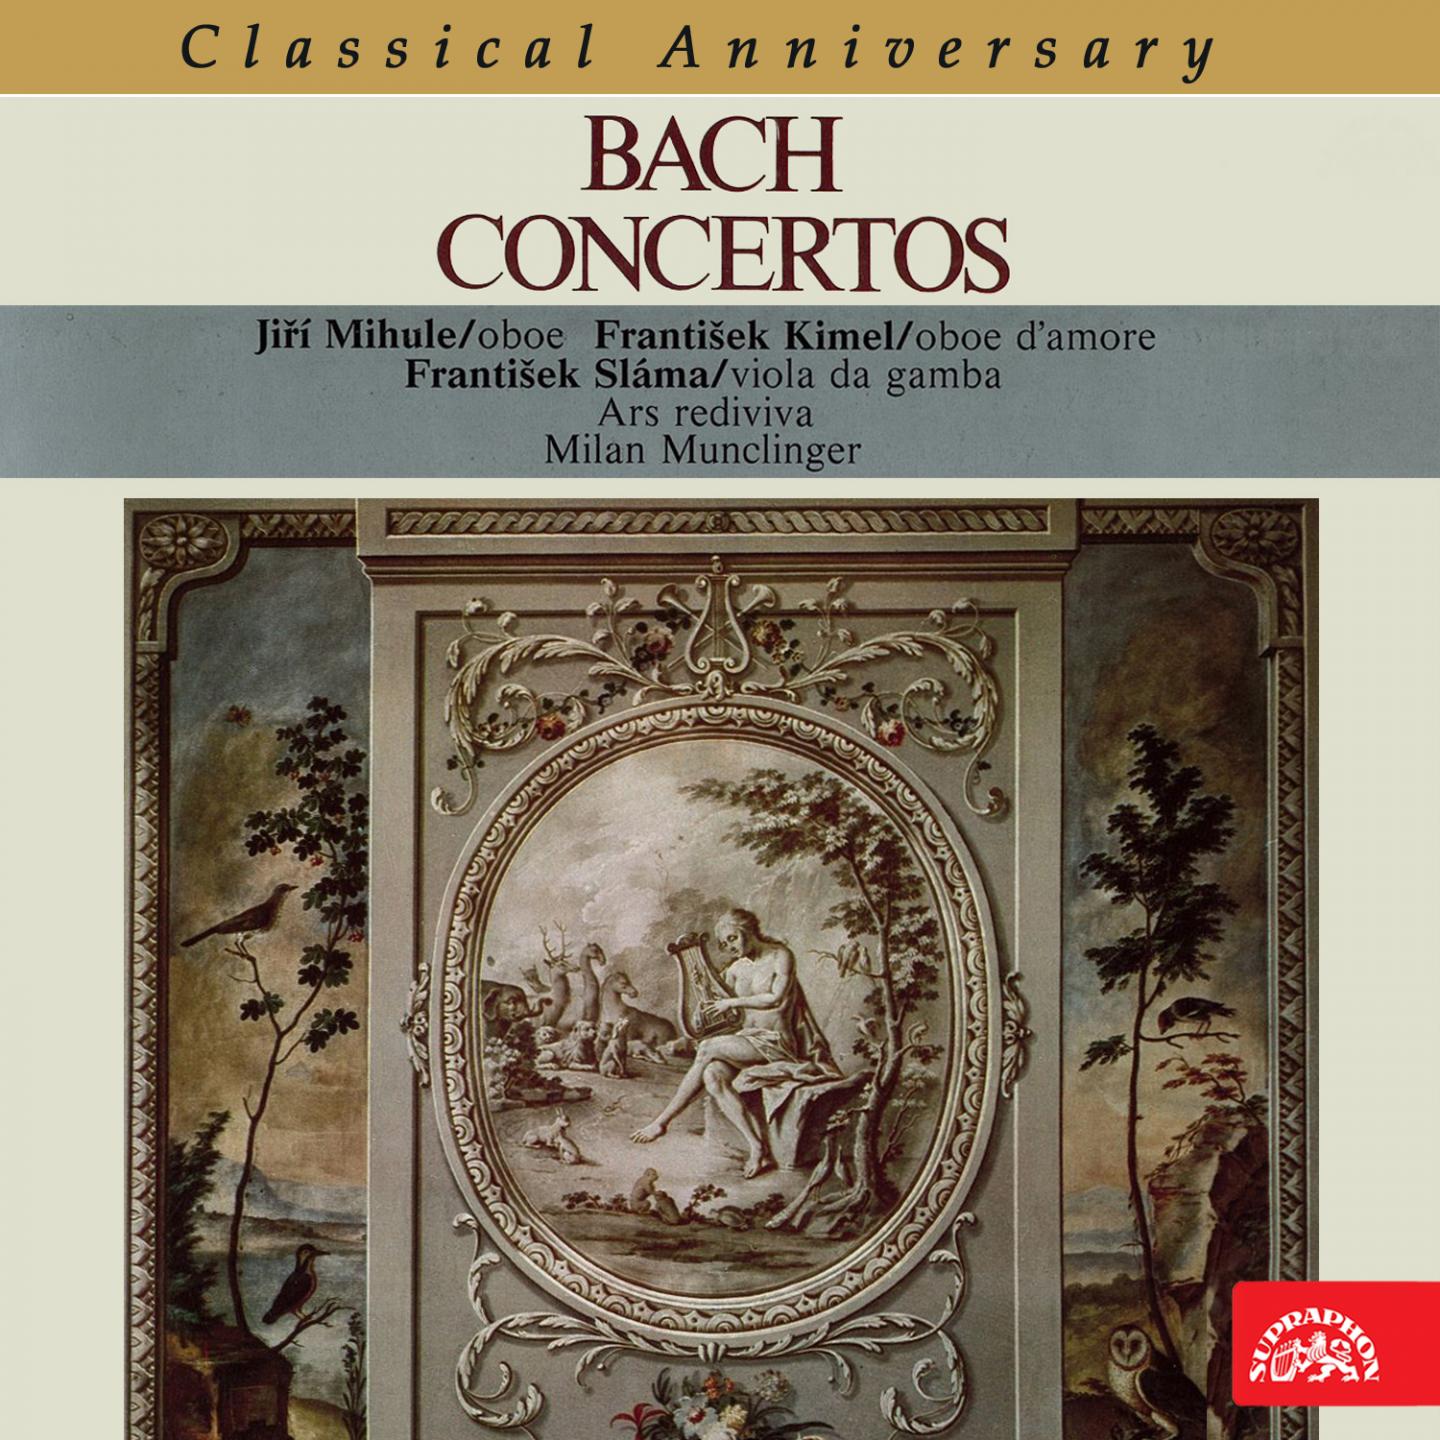 Oboe d'amore Concerto in A Major, BWV 1055R: III. Allegro ma non tanto